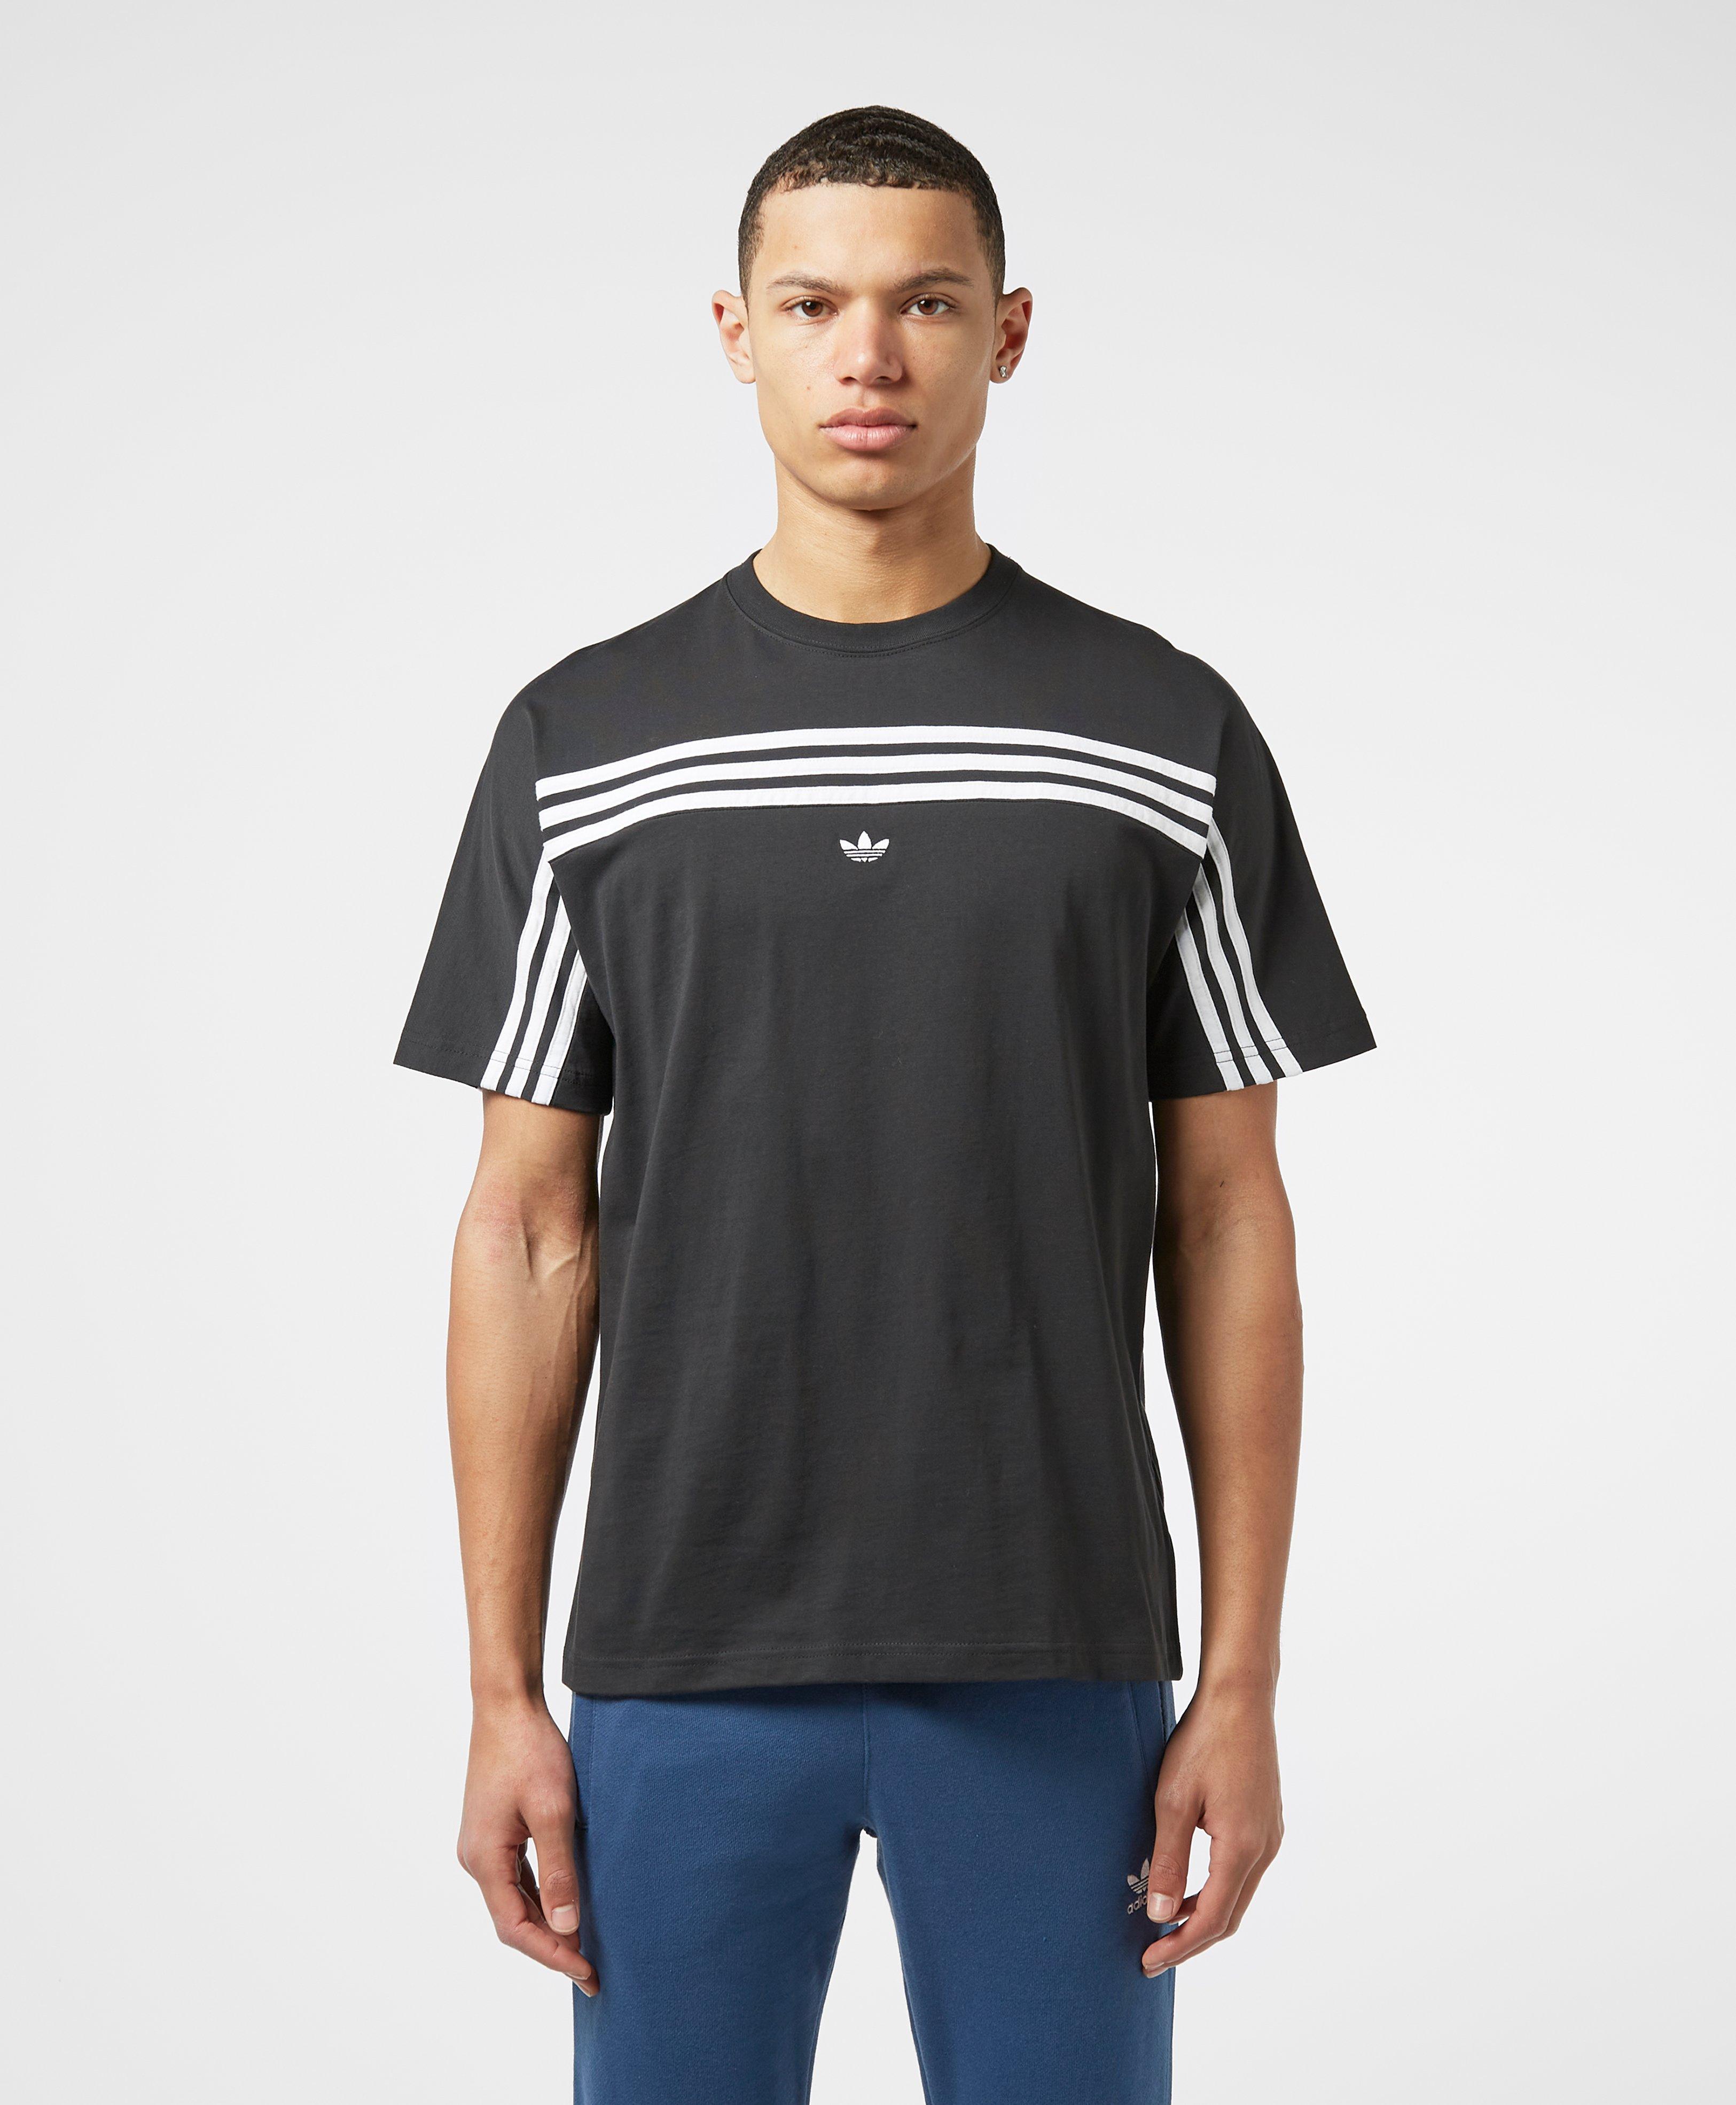 tshirt adidas 3 stripes